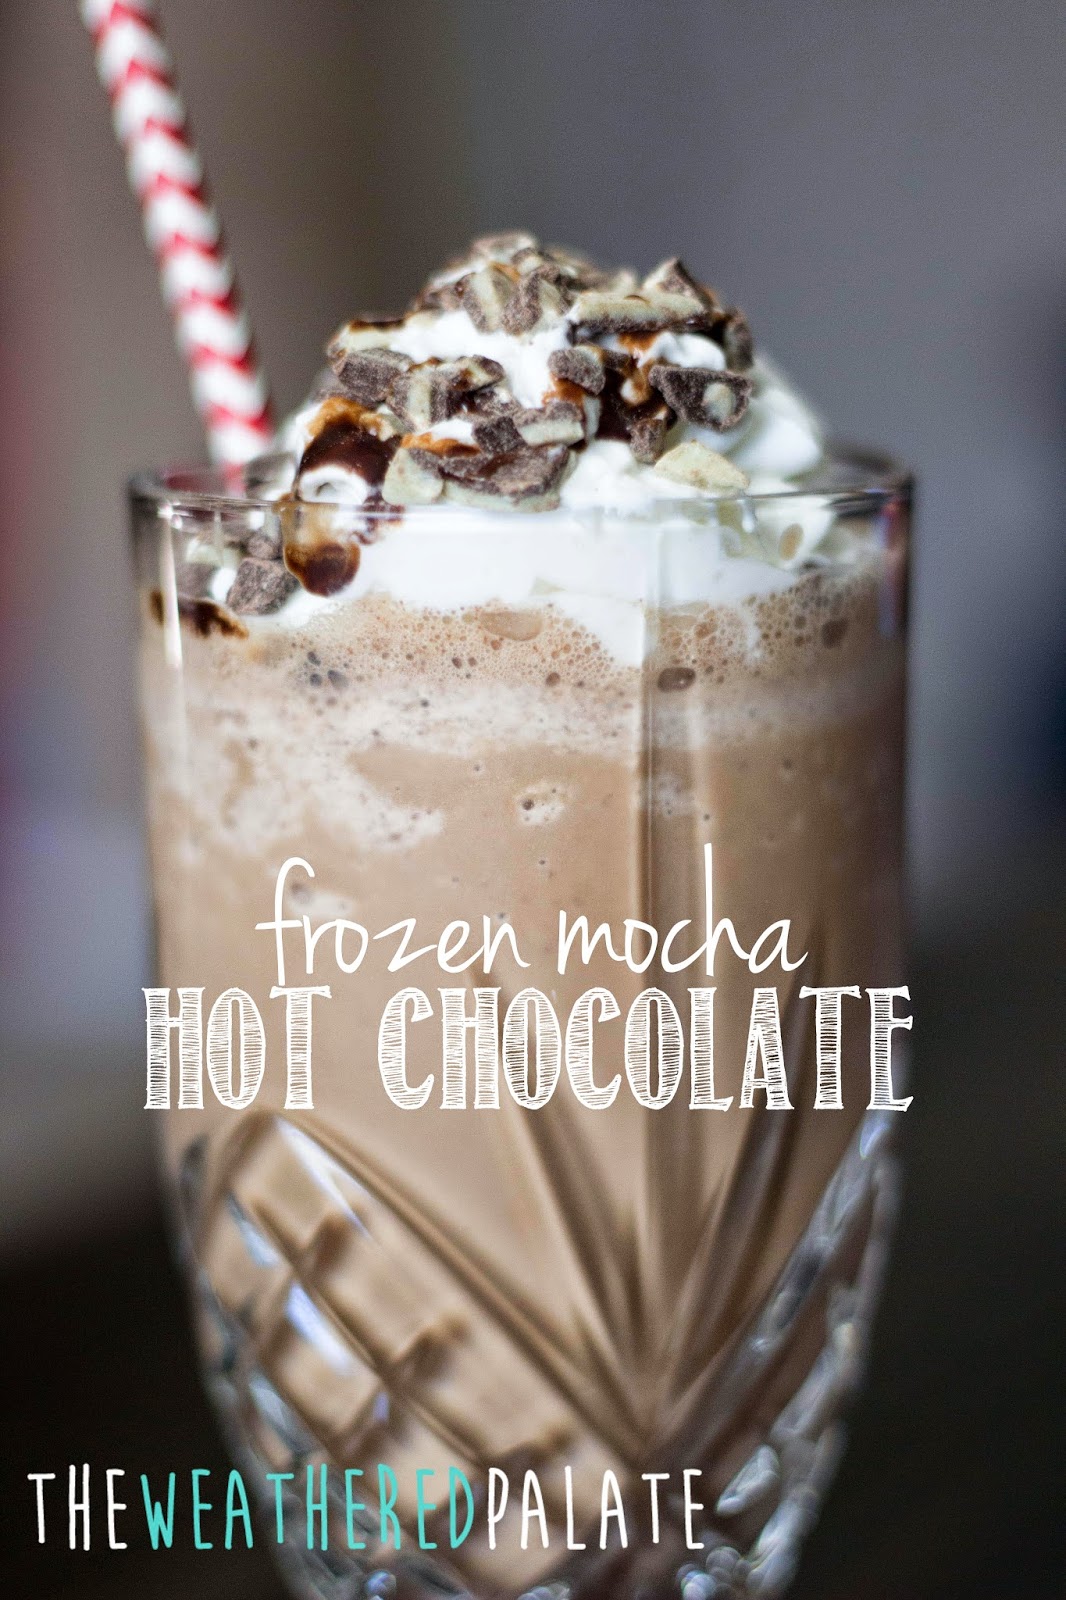 http://www.theweatheredpalate.com/2014/11/frozen-mocha-hot-chocolate.html